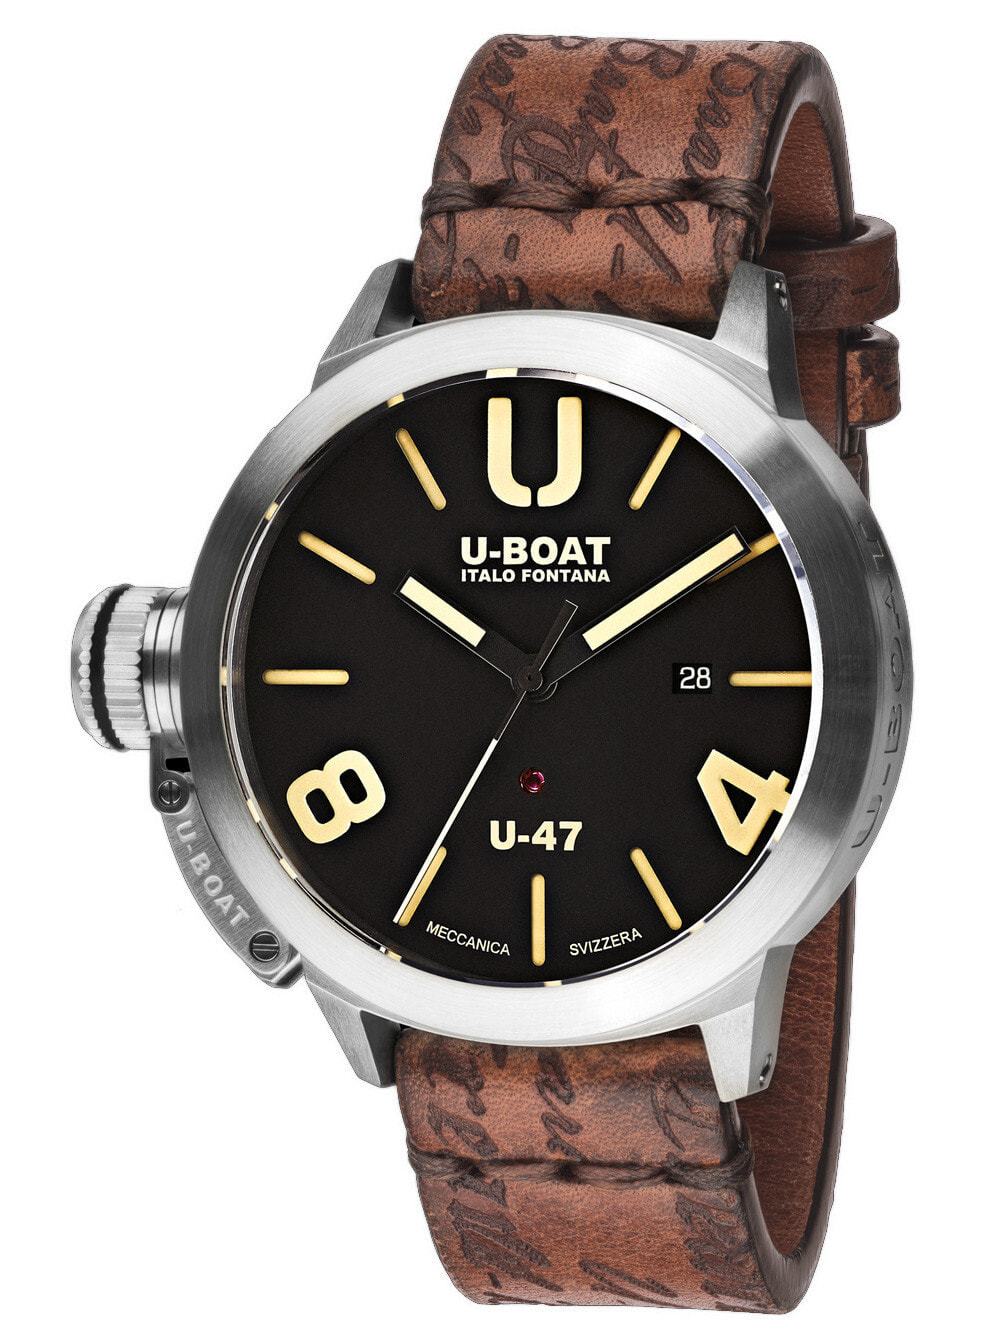 Мужские наручные часы с коричневым кожаным ремешком  U-Boat 8105 Classico U-47 Automatic 47mm 100M